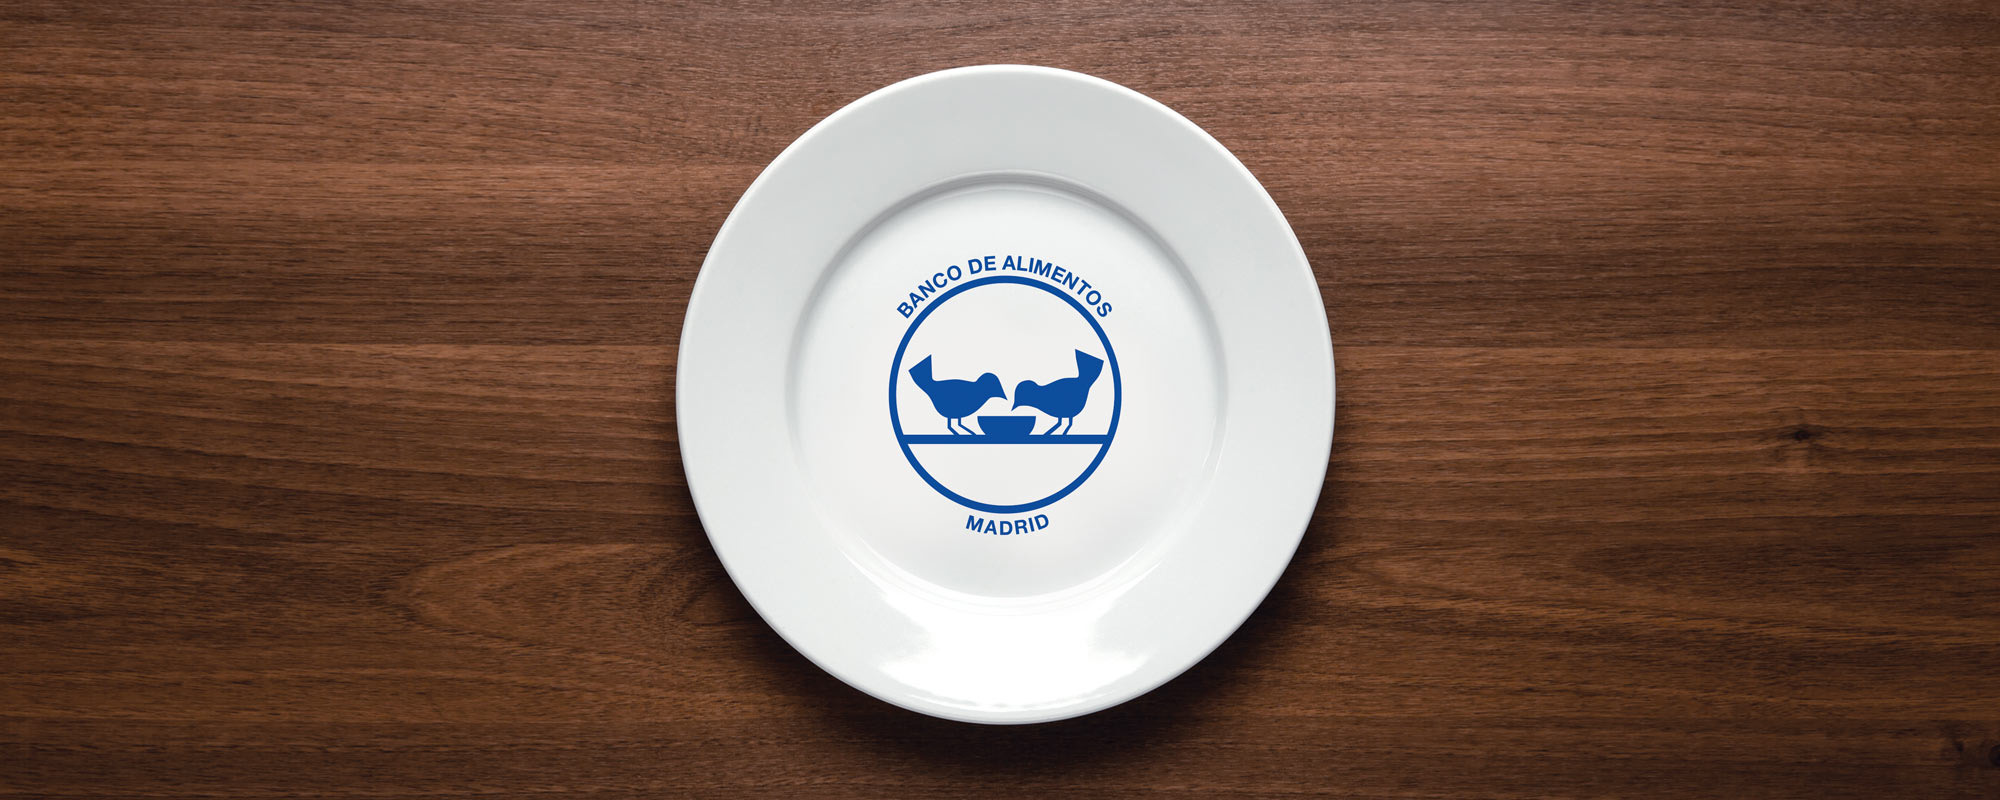 Foto de un plato blanco con el logo del Banco de Alimentos de Madrid en una mesa de madera.